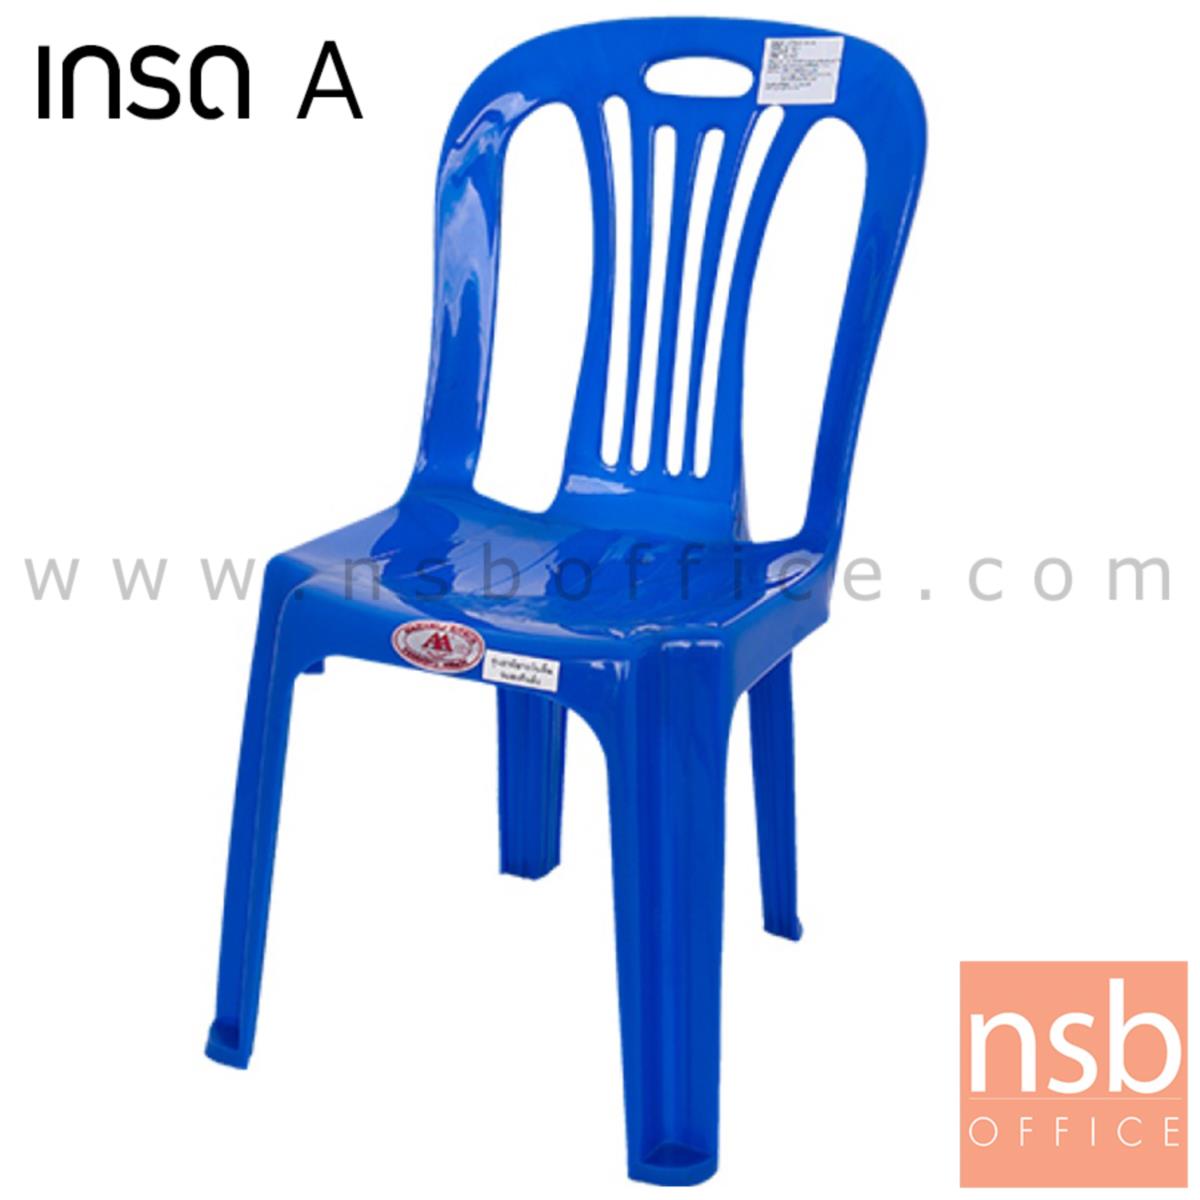 เก้าอี้พลาสติกสำหรับเด็ก รุ่น KID_CHAIR ซ้อนเก็บได้ (พลาสติกเกรด A) 